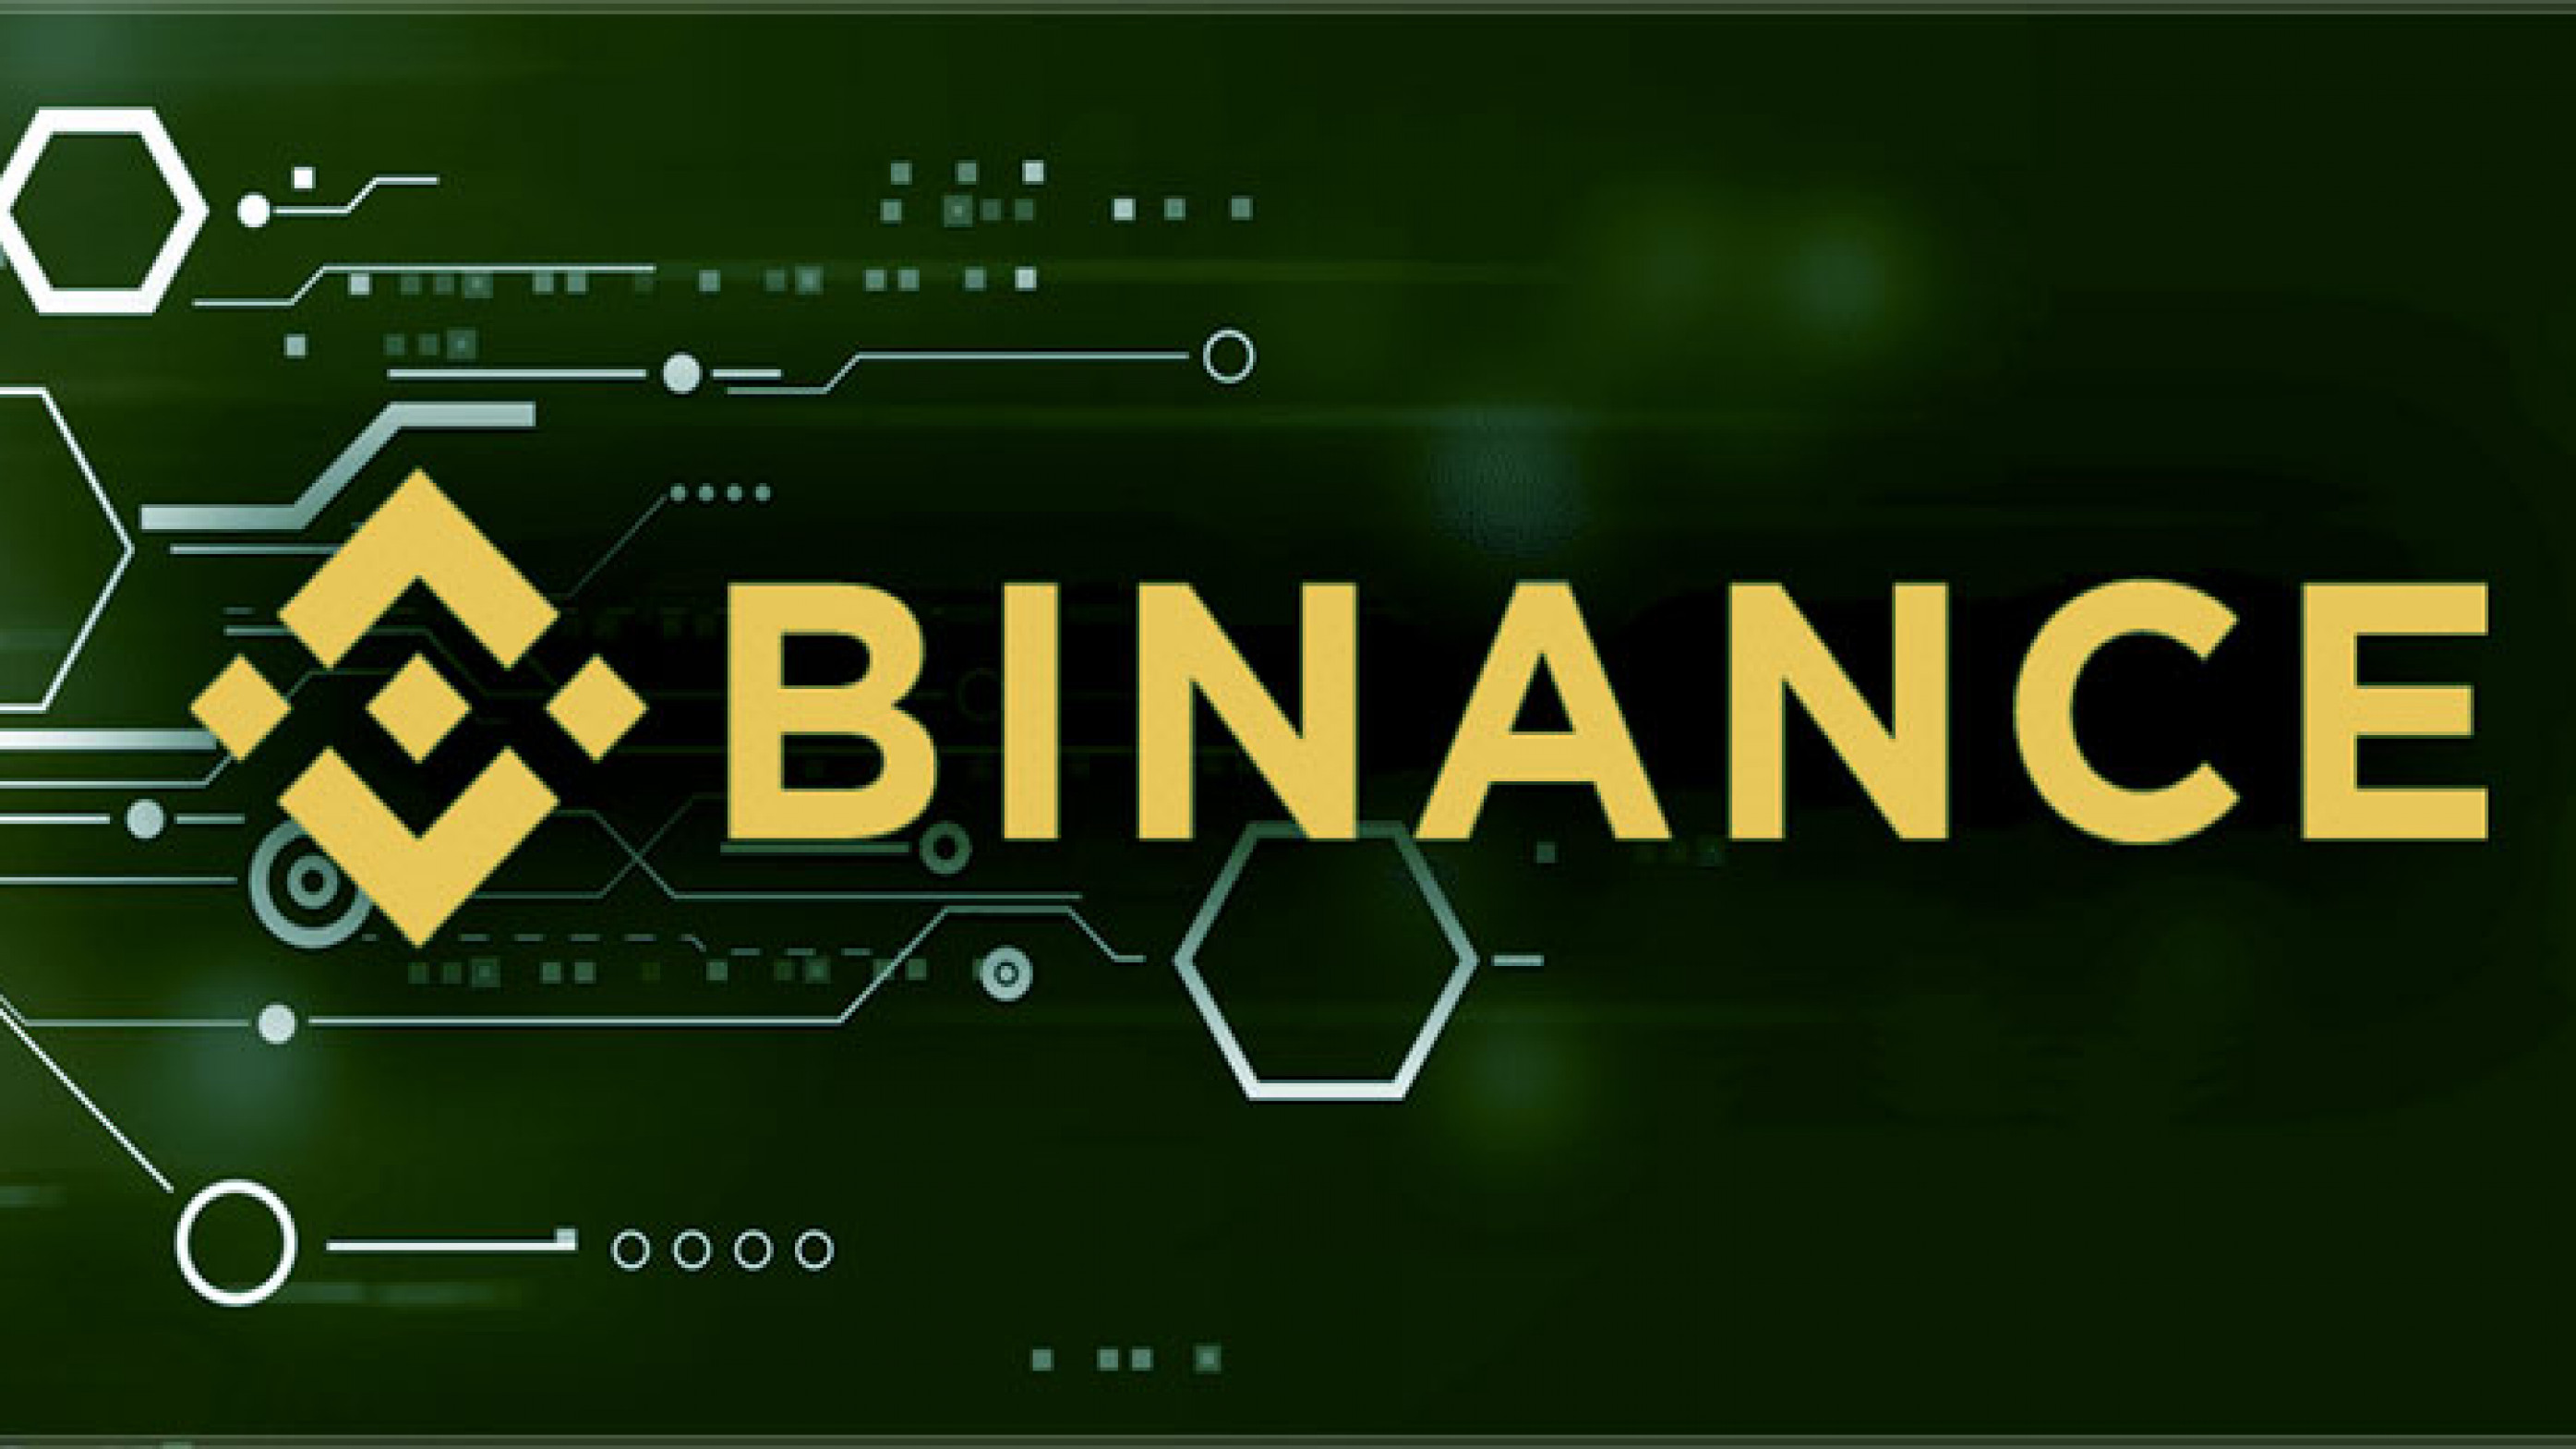 Binance welcome bonus notcoin. Бинанс. Бинансе биржа. Криптовалютные биржи Бинанс. Binance биржа логотип.